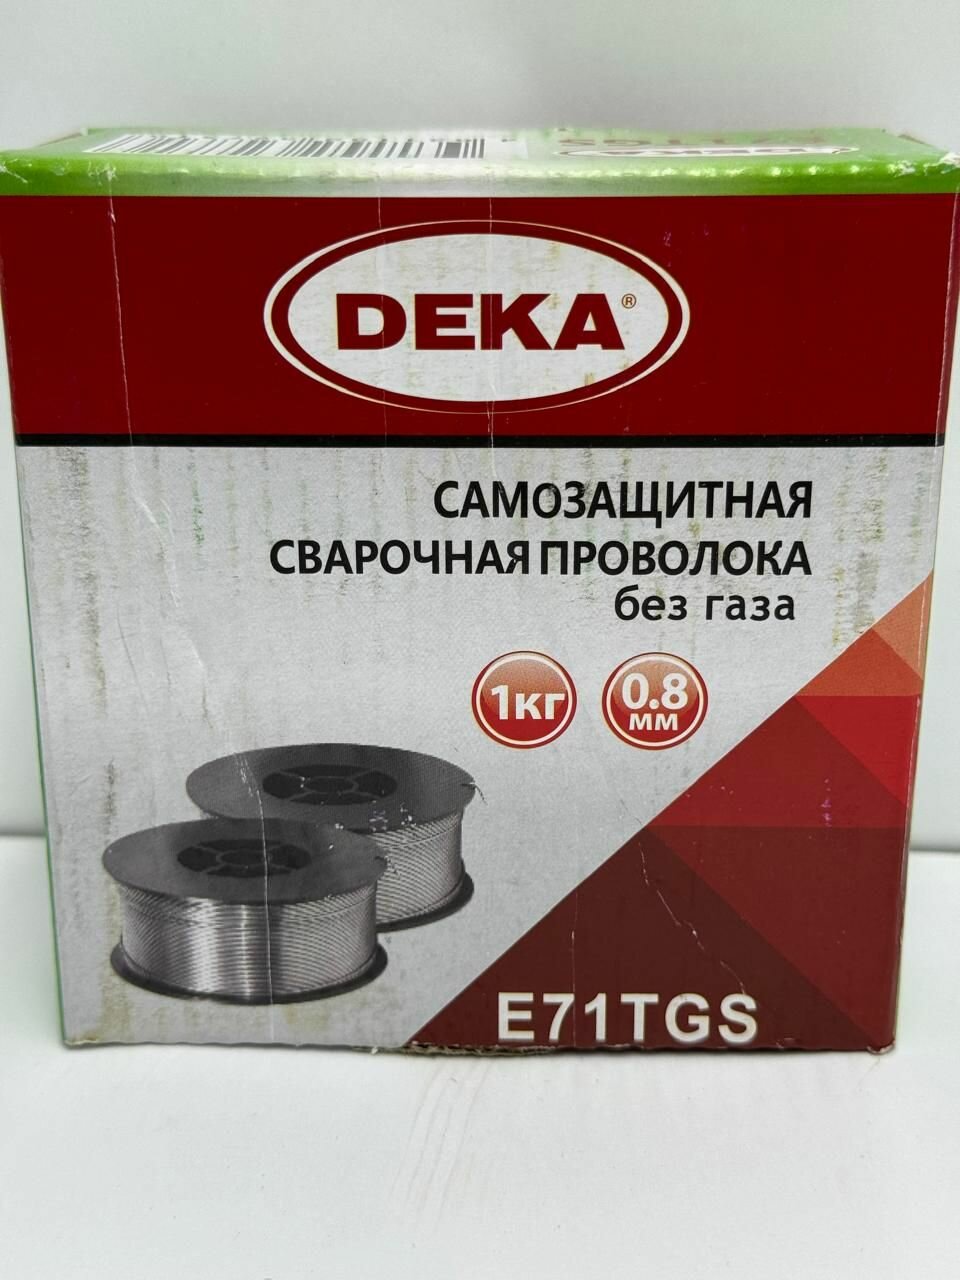 Проволока для сварки порошковая самозащитная без газа DEKA E71TGS 0,8мм, 1кг